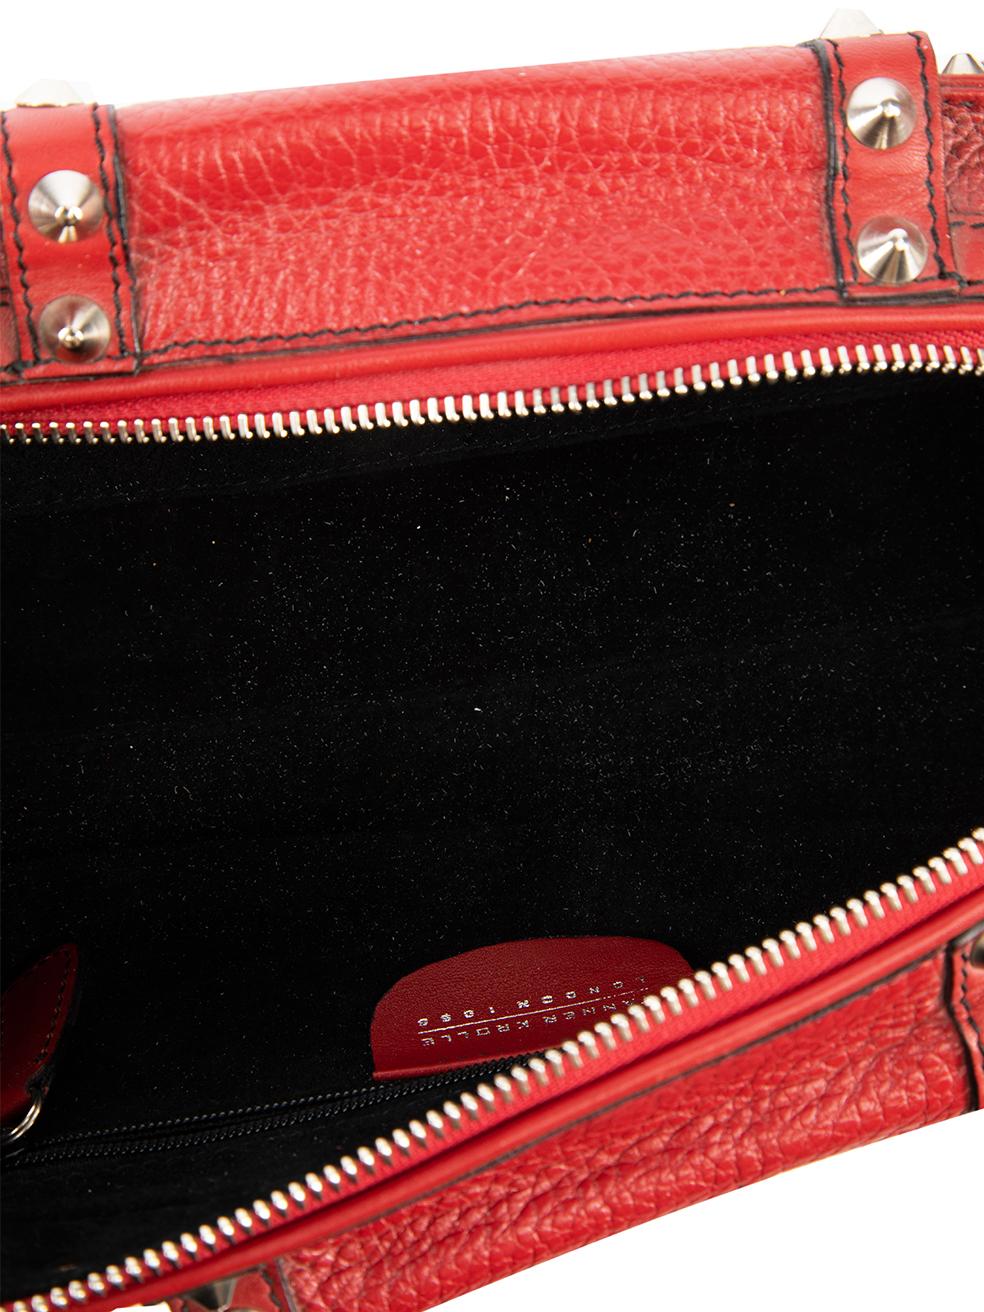 Pre-Loved Tanner Krolle Women's Red Leather Studded Baguette Shoulder Bag 1